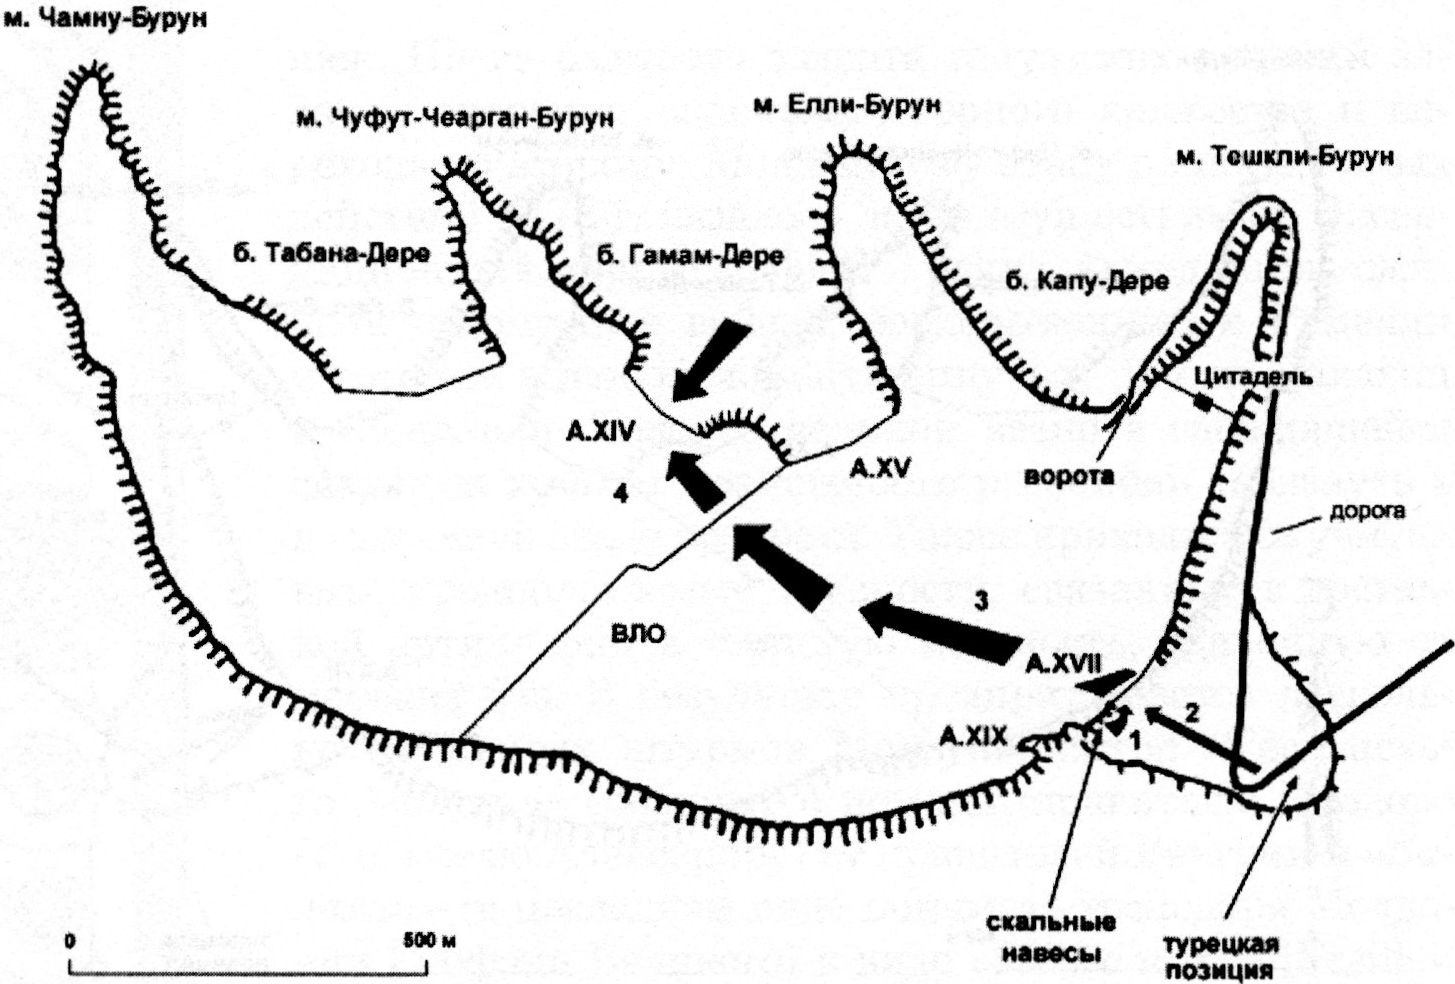 Третий этап захвата Мангупа в 1475 г. Военная уловка и прорыв на территорию города: 1 — действие засадного отряда турок; 2 — проникновение основных сил османов через калитку в A.XVII на территорию крепости